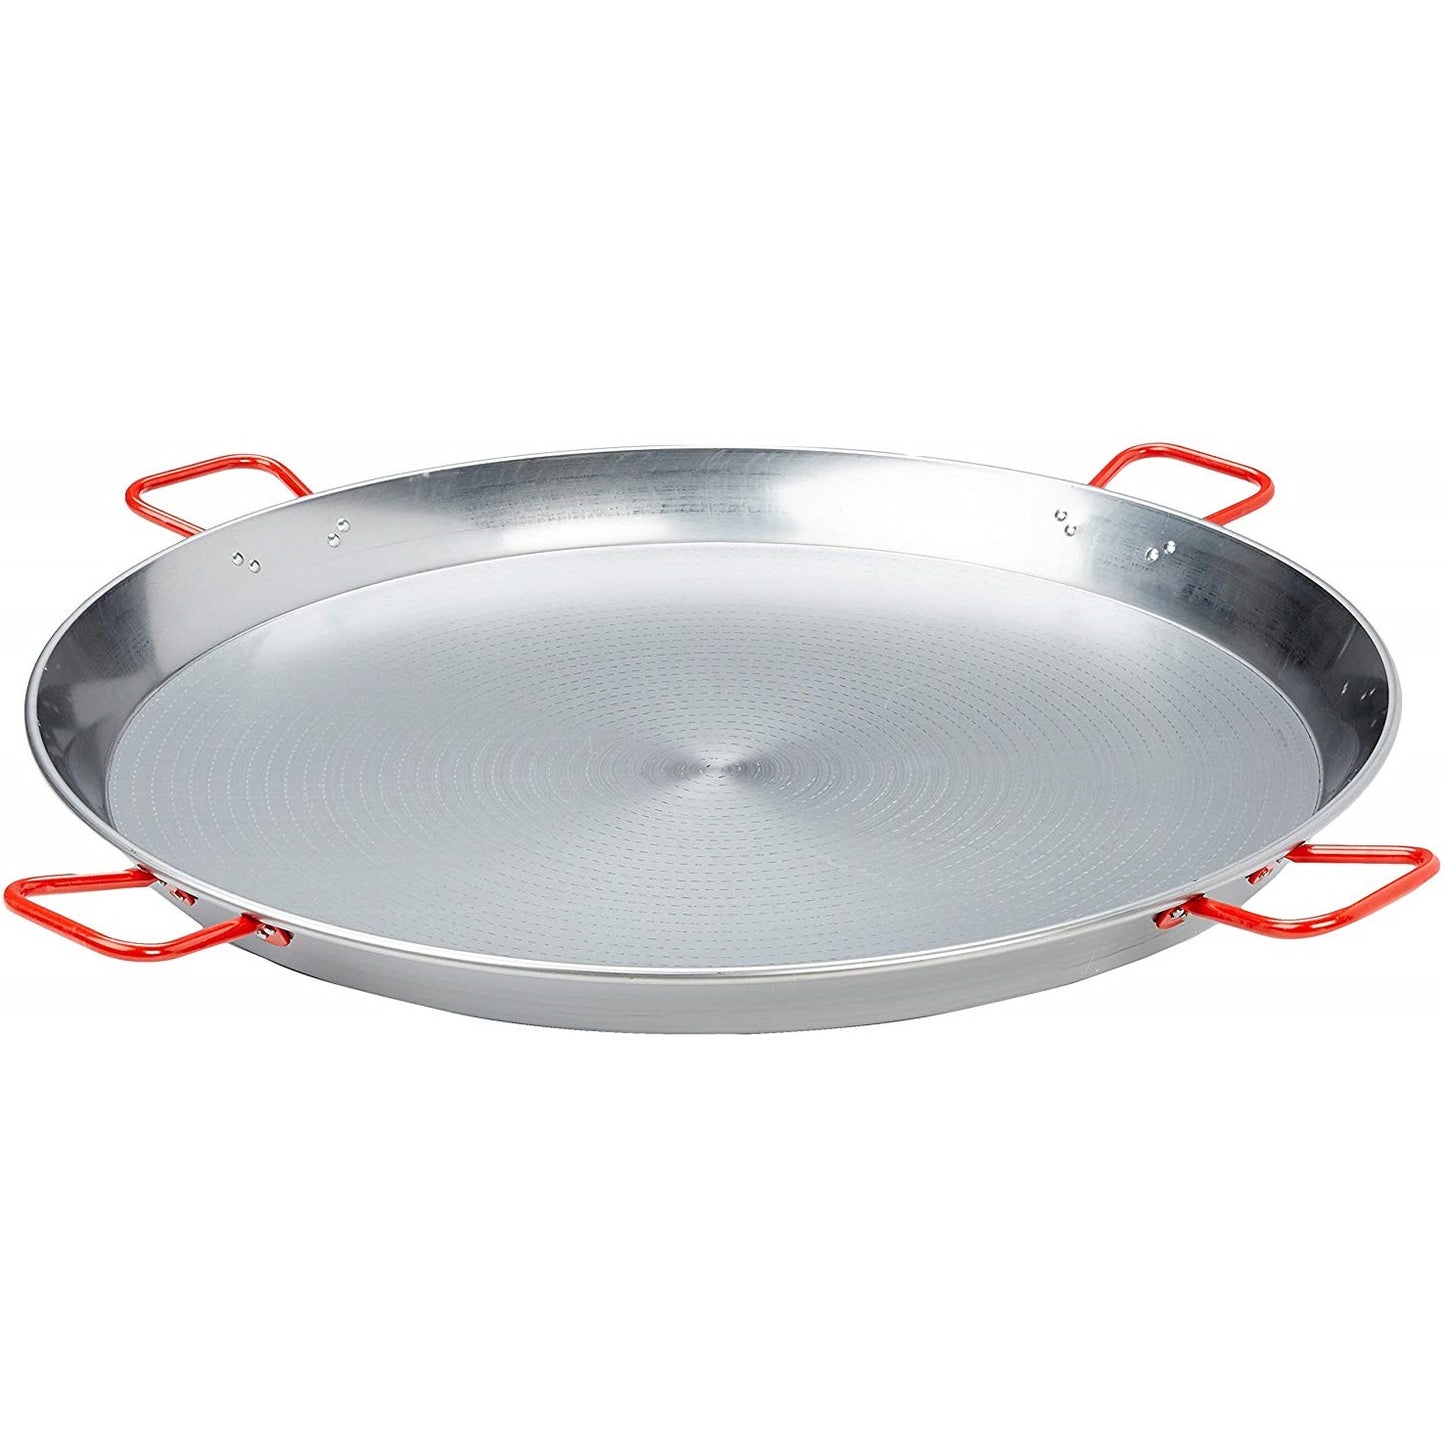 Carbon steel paella pan - diameter sizes 36cm, 42cm, 50cm, 60cm, 90cm, 100cm